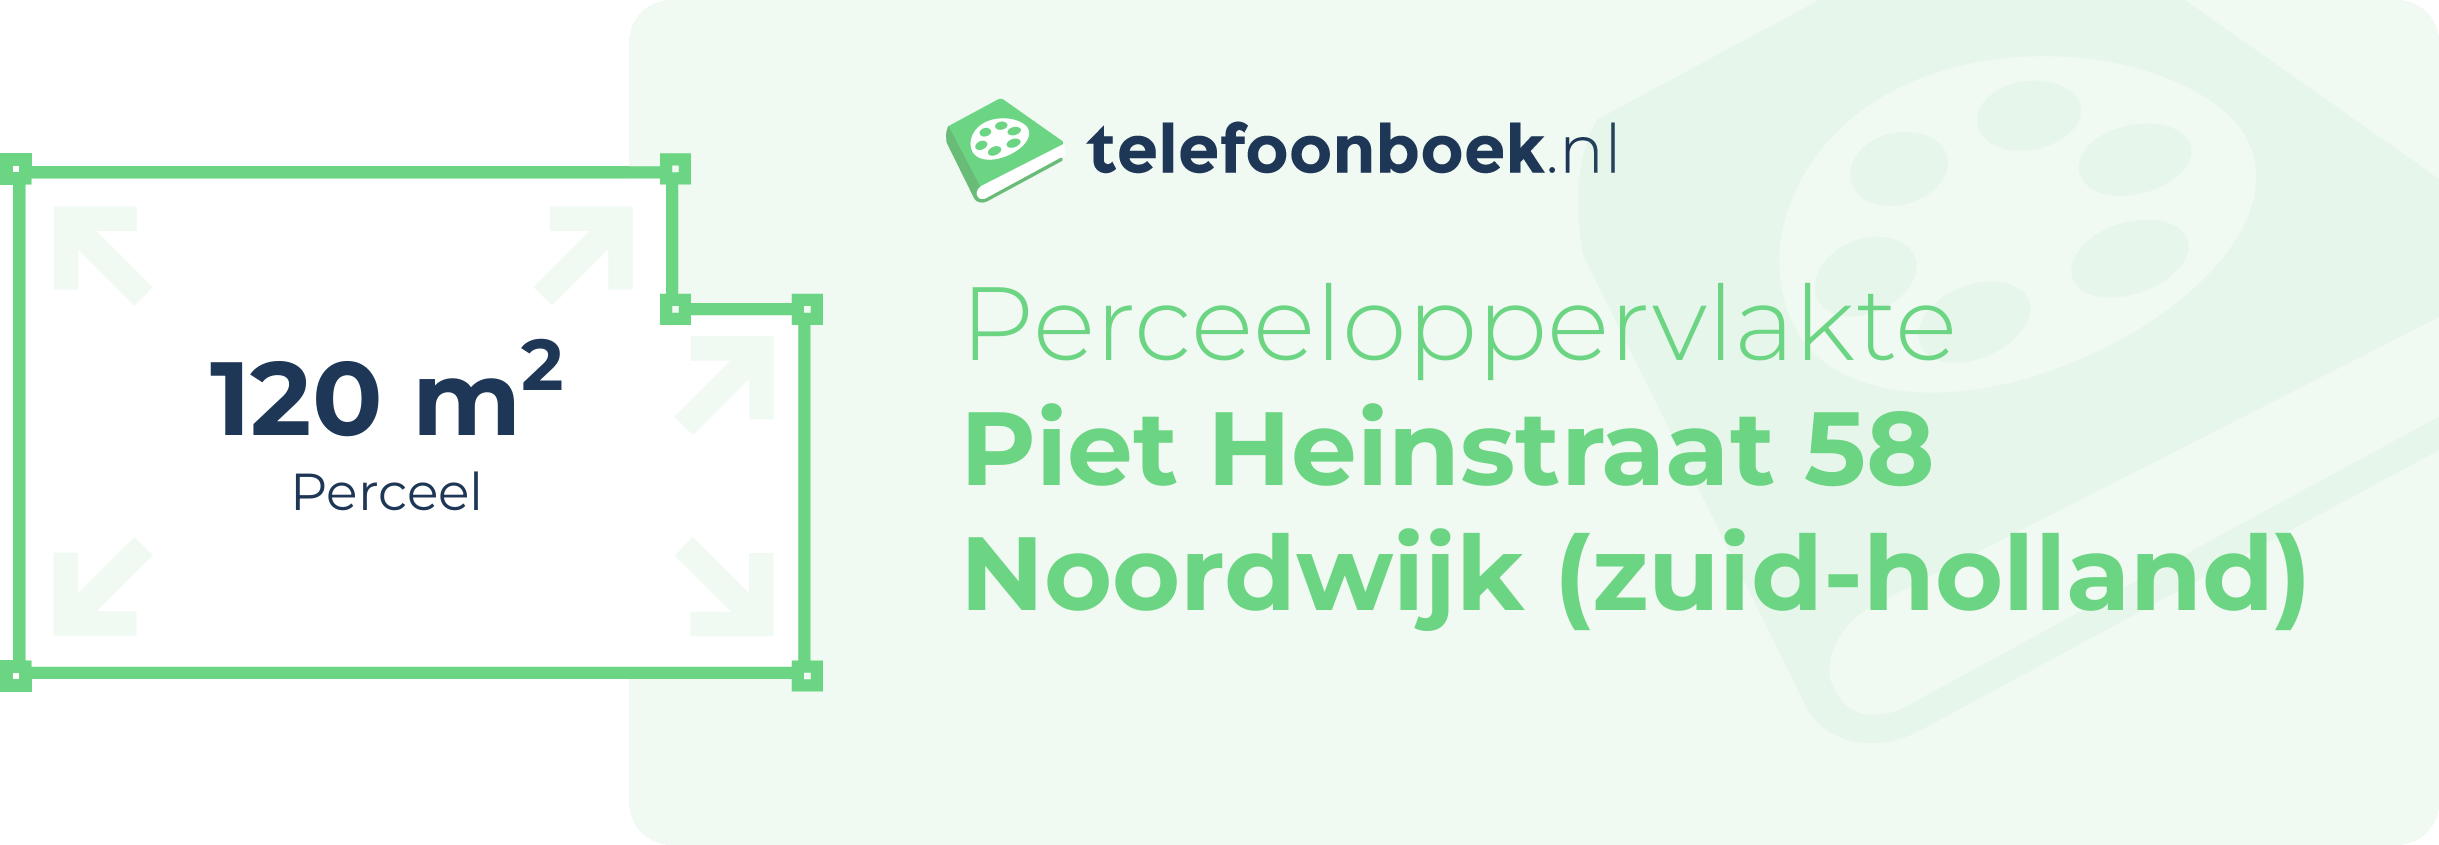 Perceeloppervlakte Piet Heinstraat 58 Noordwijk (Zuid-Holland)